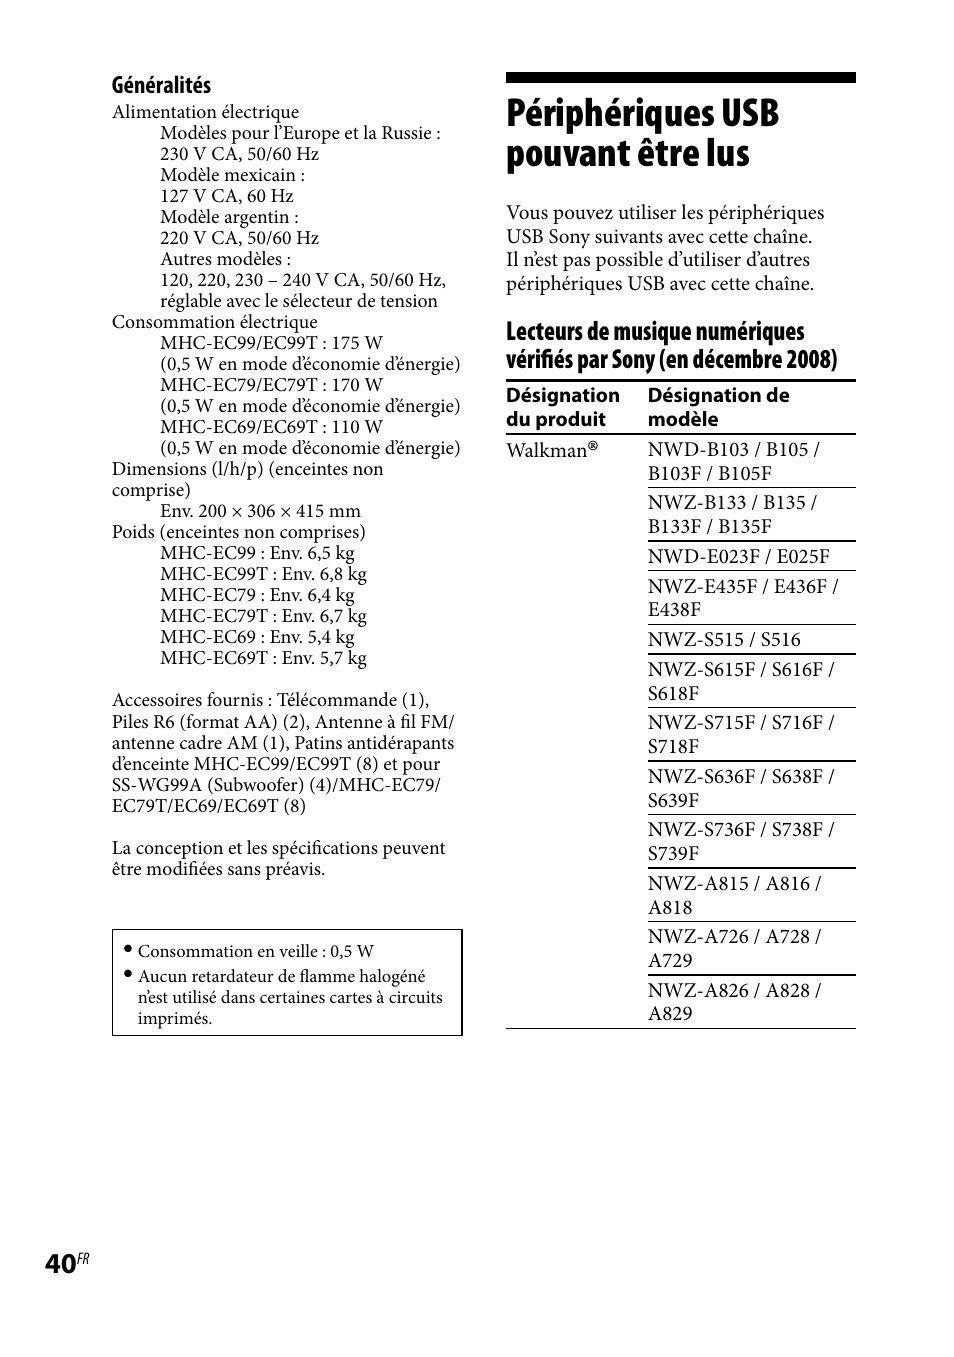 Périphériques usb pouvant être lus, Périphériques usb pouvant être | Sony MHC-EC69 Manuel d'utilisation | Page 40 / 44